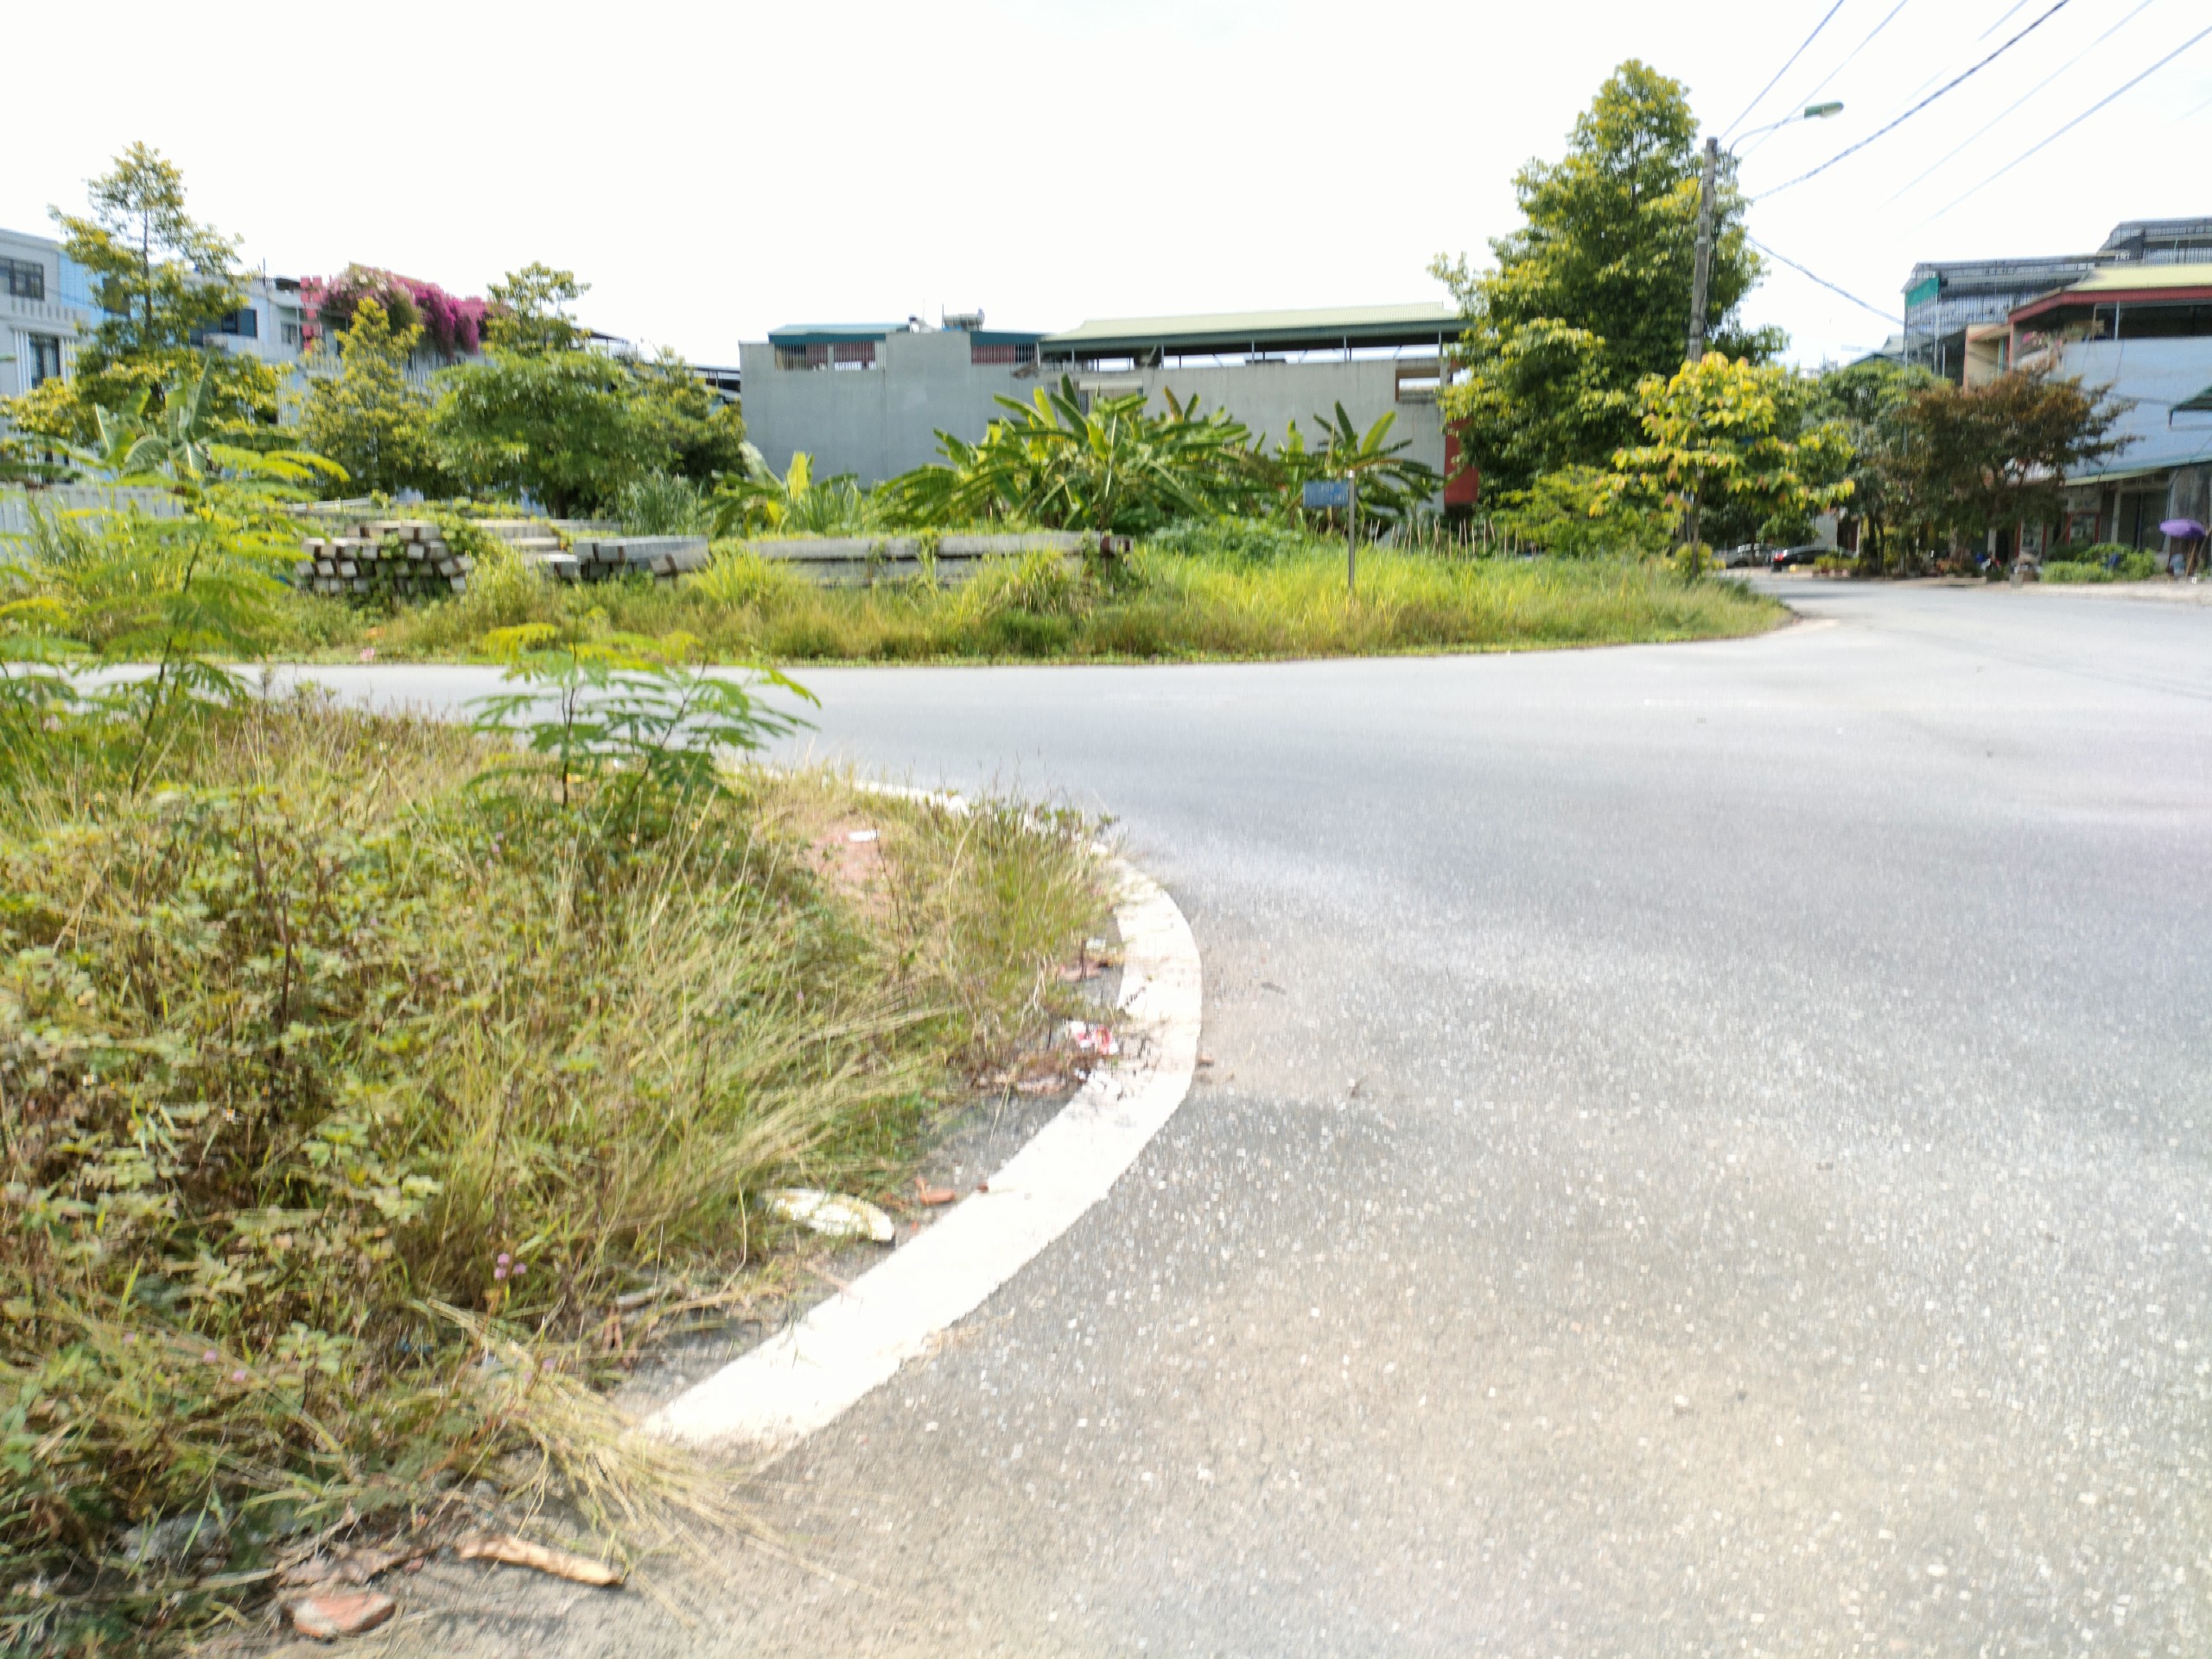 Lô đất xây BT – nhà vườn 3 mặt thoáng ngay phố Trần Đăng Ninh, phường Cốc Lếu, Lào Cai, chủ cần bán nhanh nên giá cực đầu tư